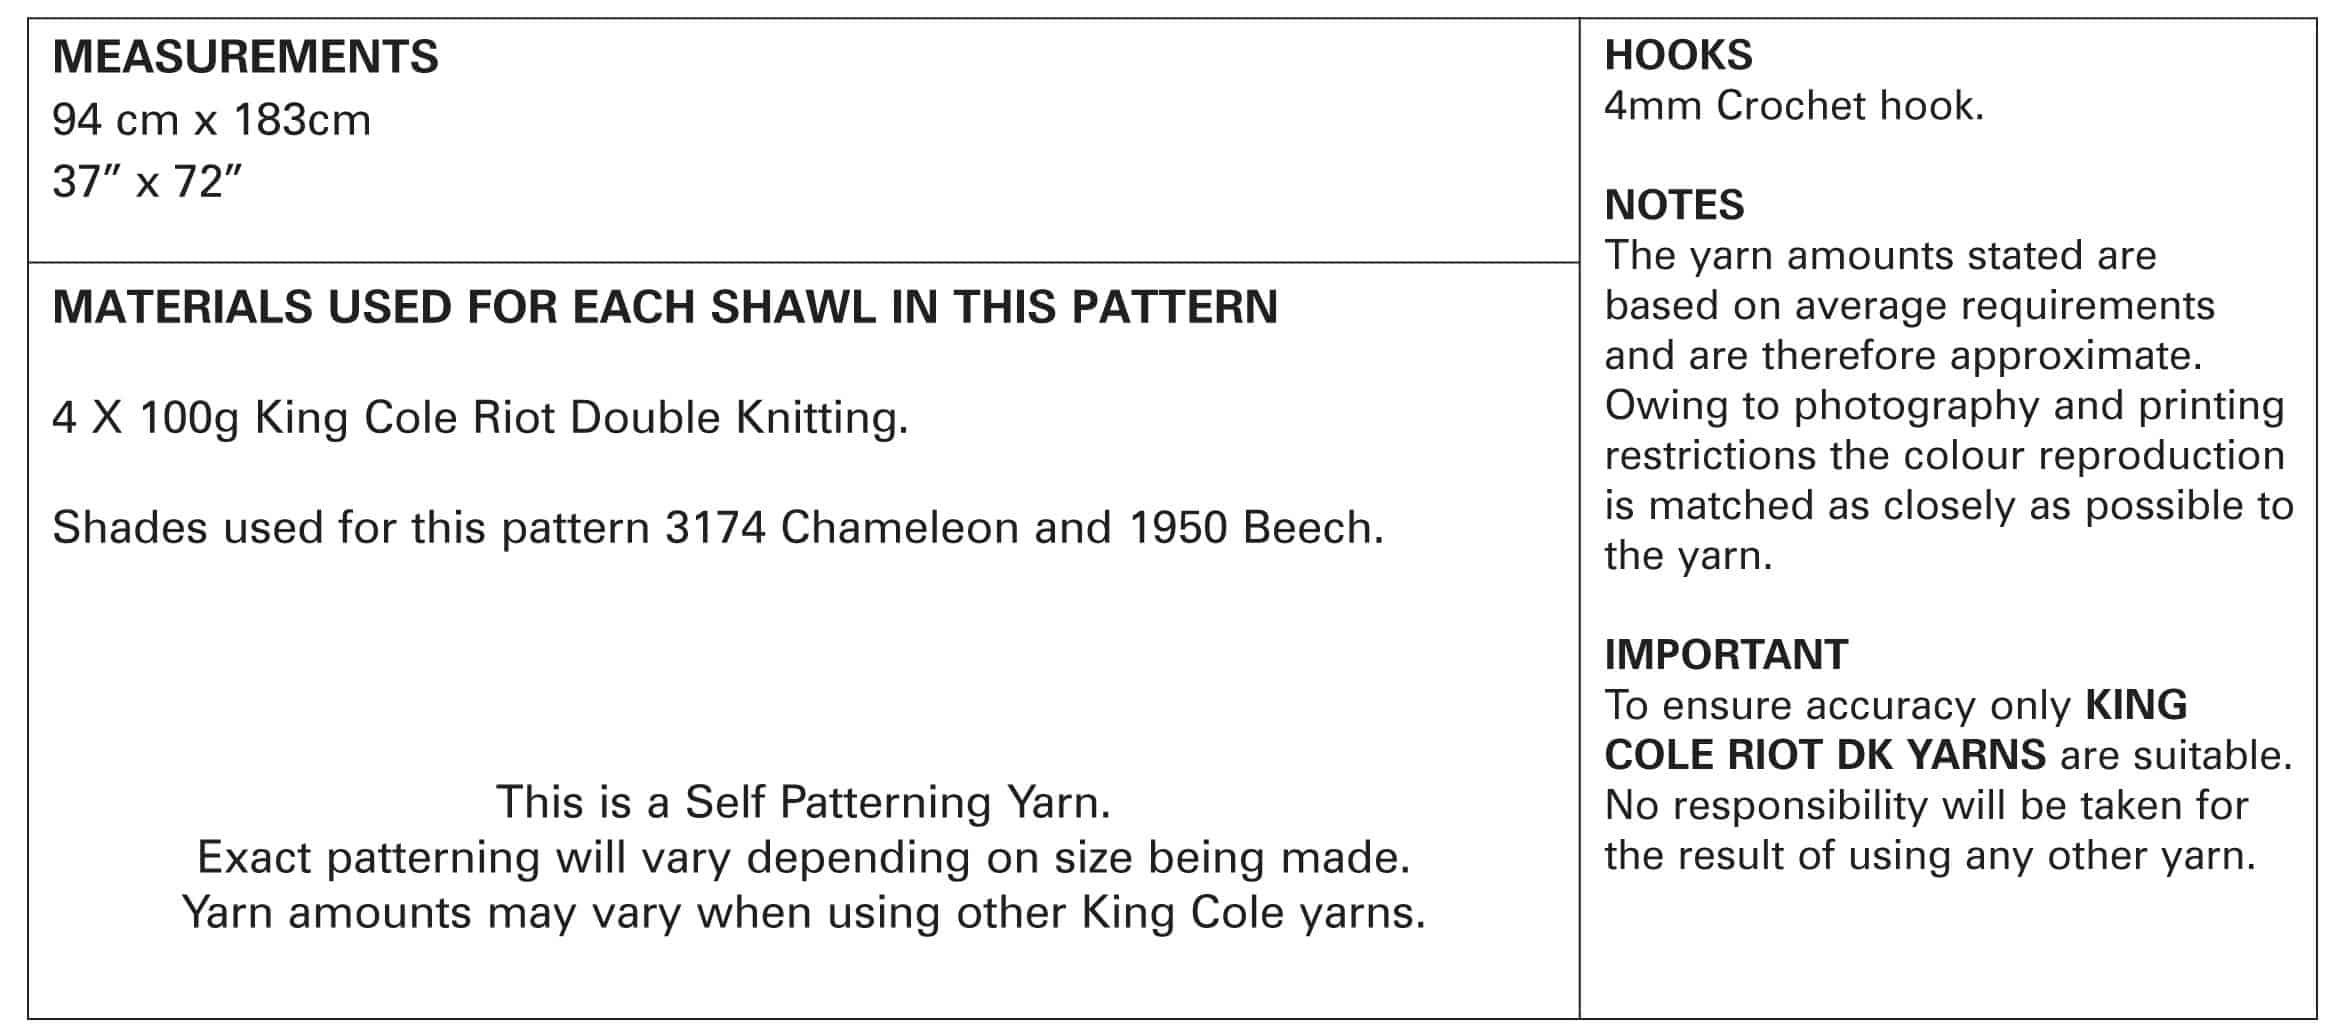 King Cole Pattern 5335 Crochet Virus Shawl in Riot DK